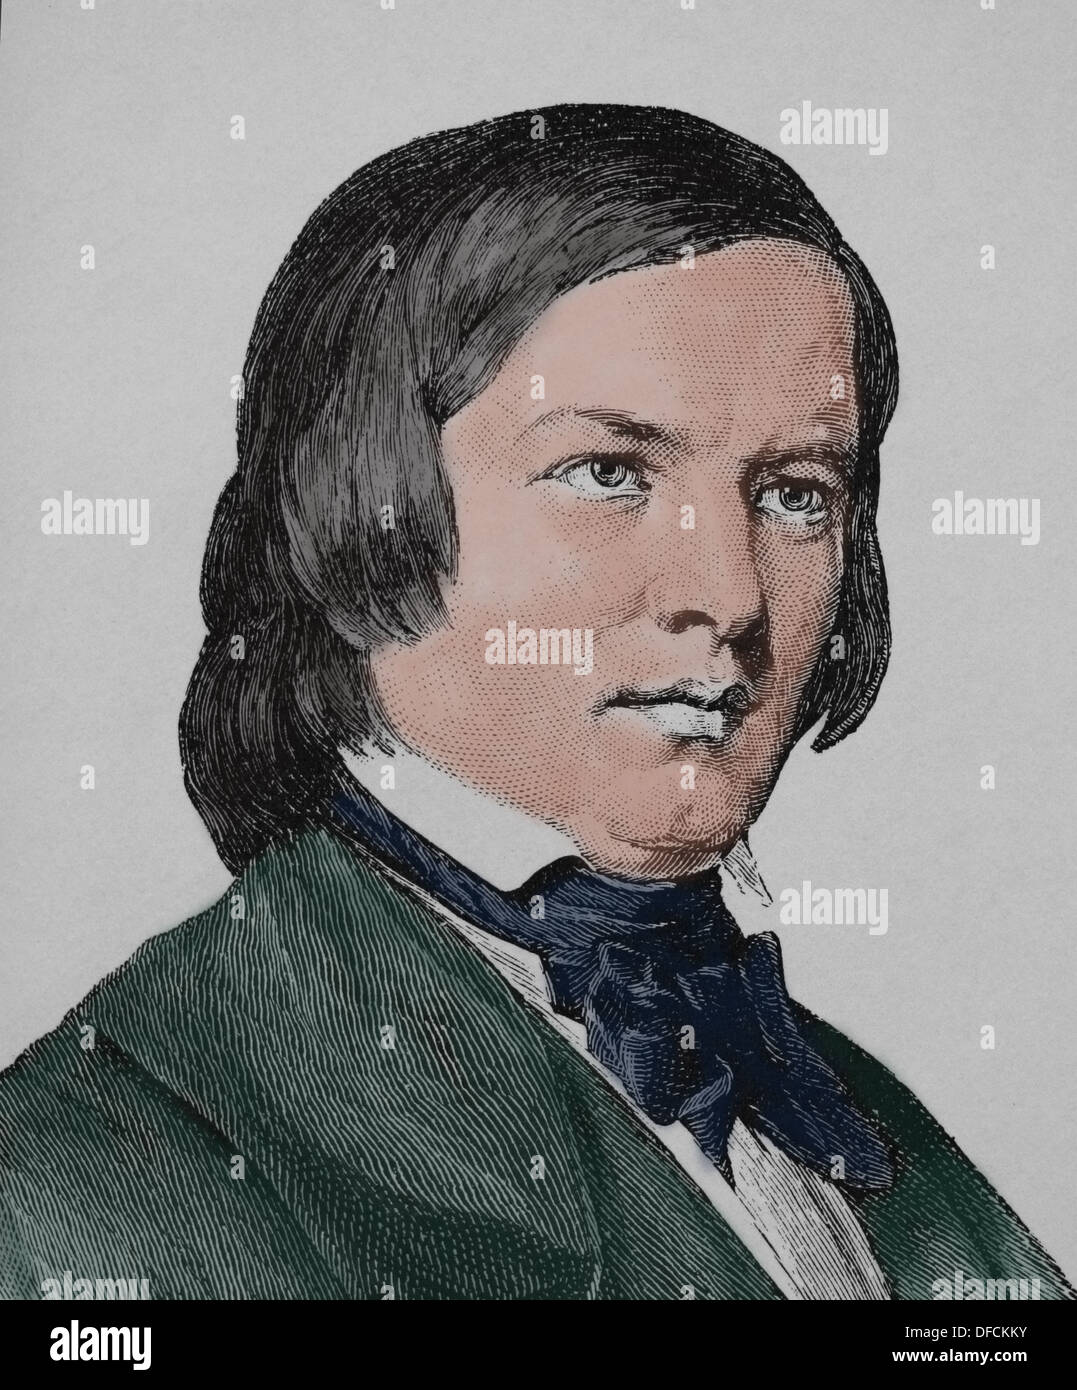 Robert Schumann (1810 - 1856). Compositeur et pianiste virtuose. Époque romantique. La gravure. 19e siècle. Banque D'Images